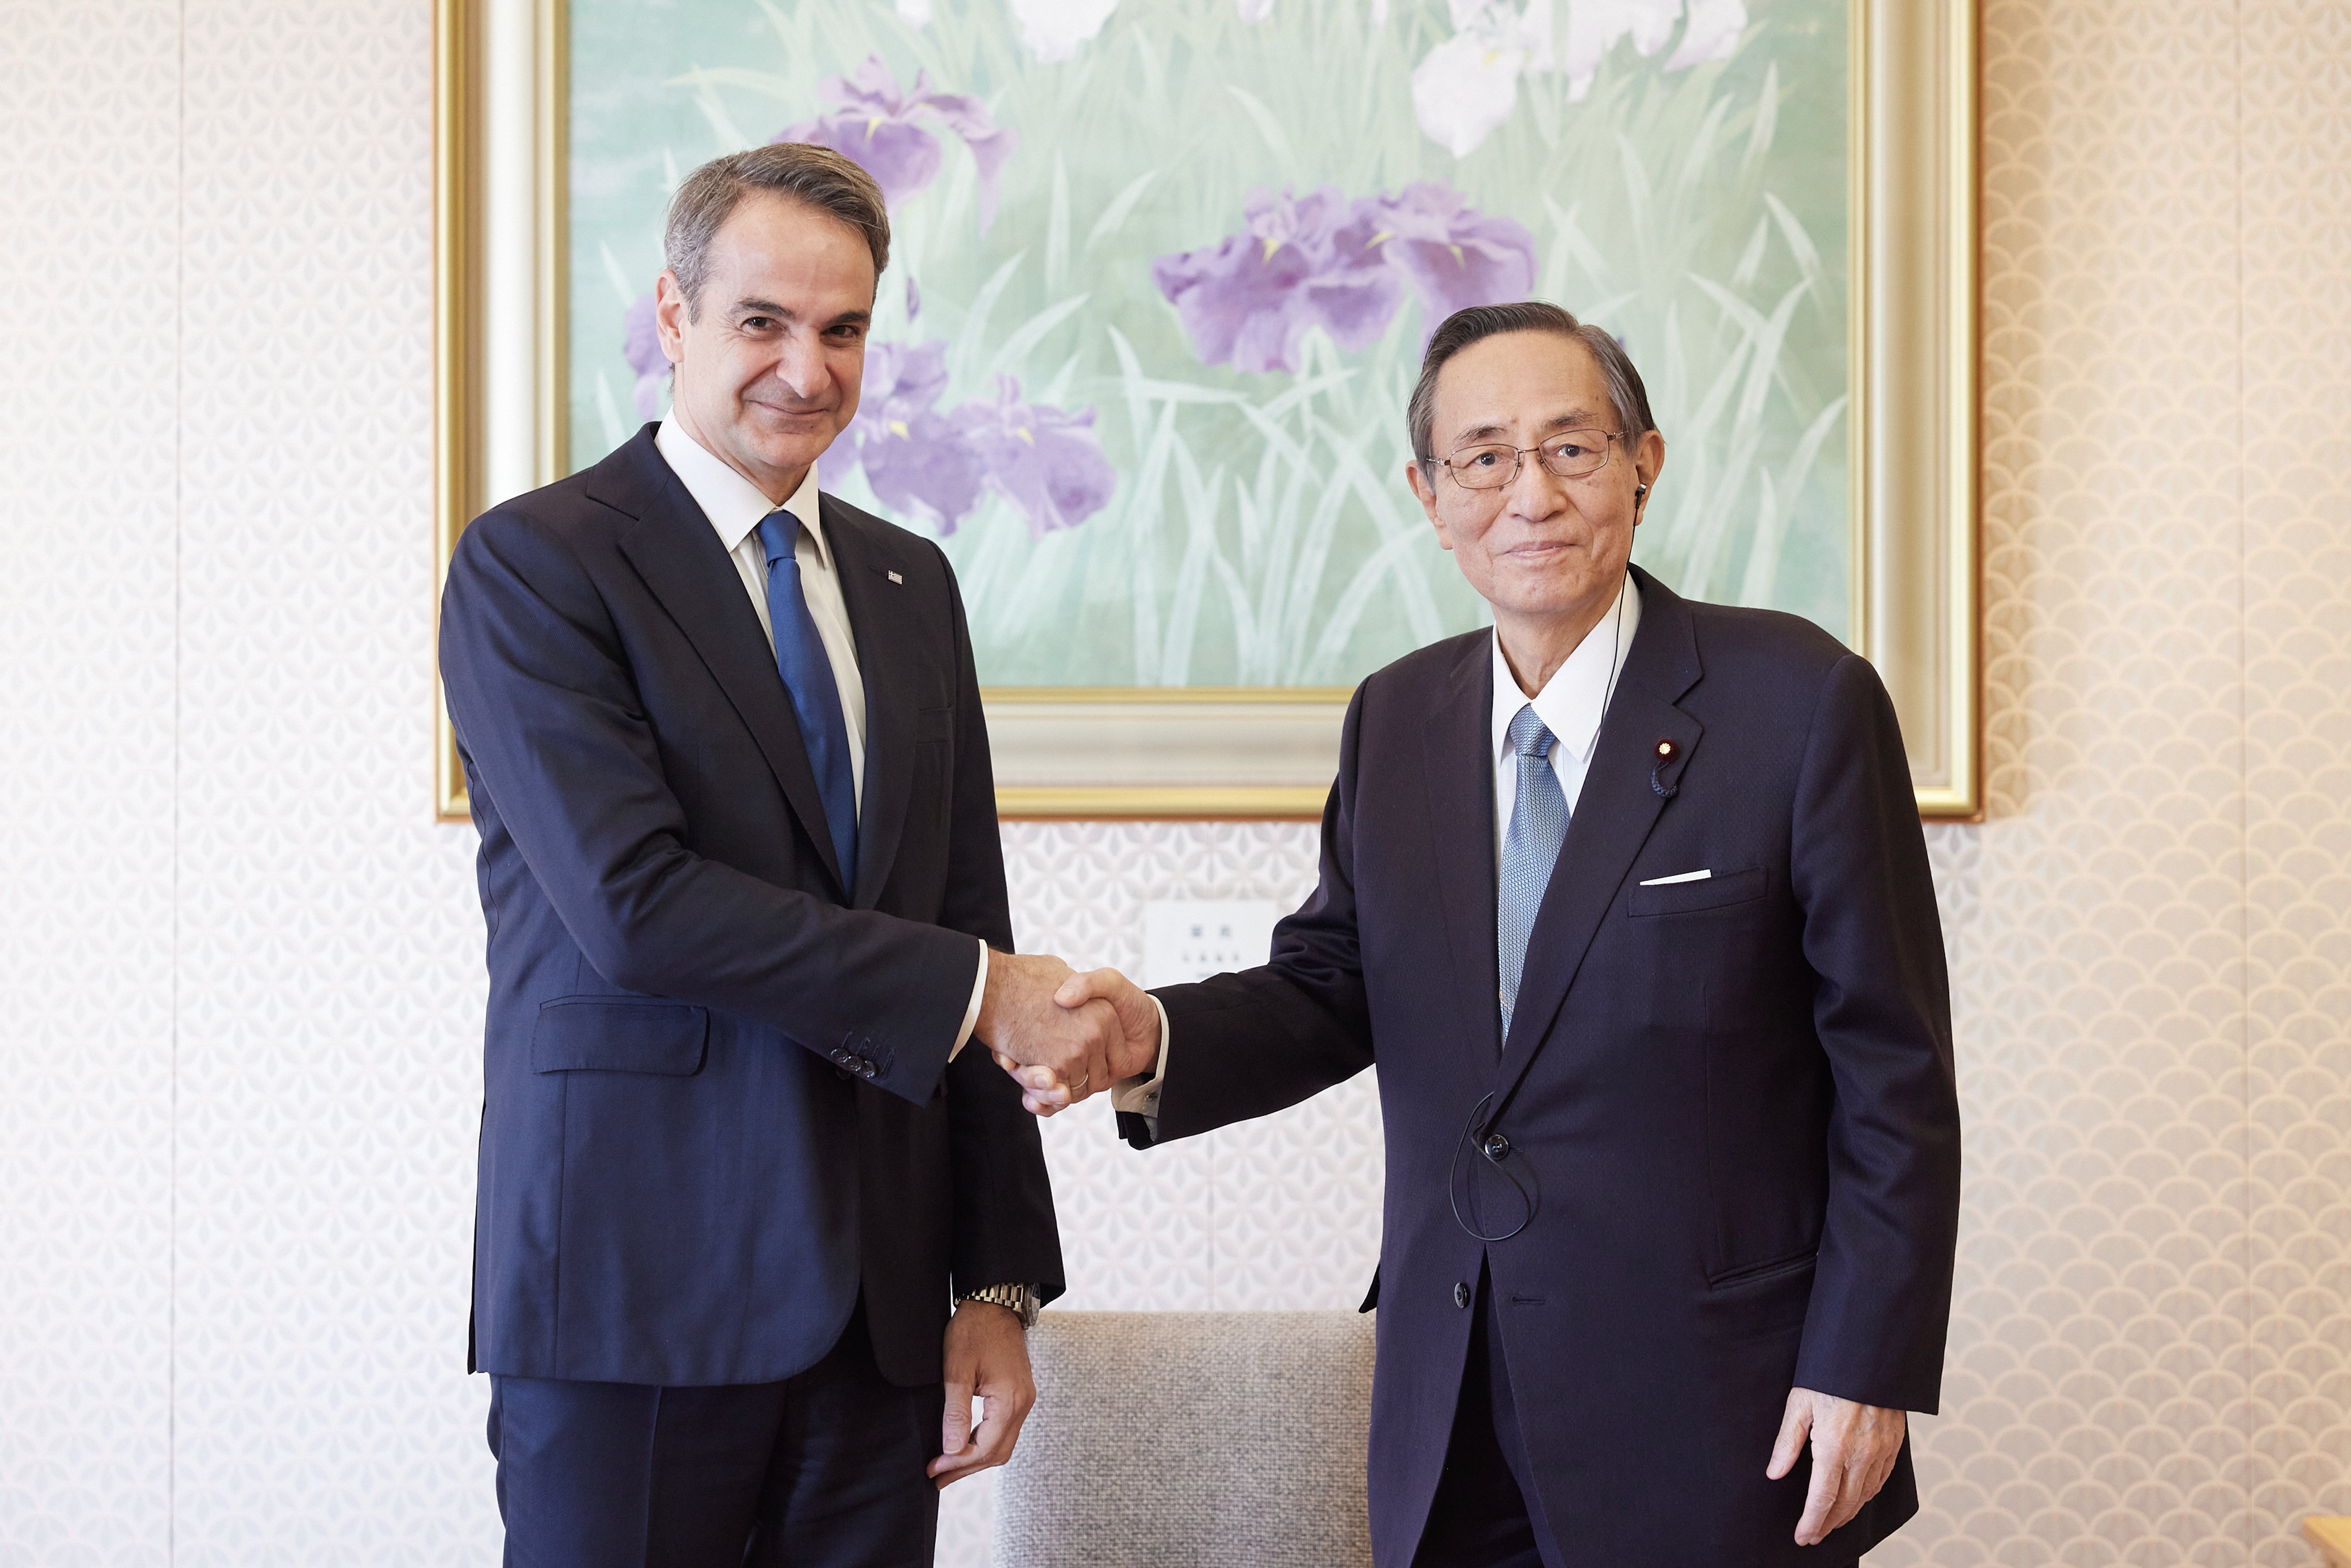 Στην Ιαπωνία ο Πρωθυπουργός σε ένα ταξίδι για προσέλκυση επενδύσεων